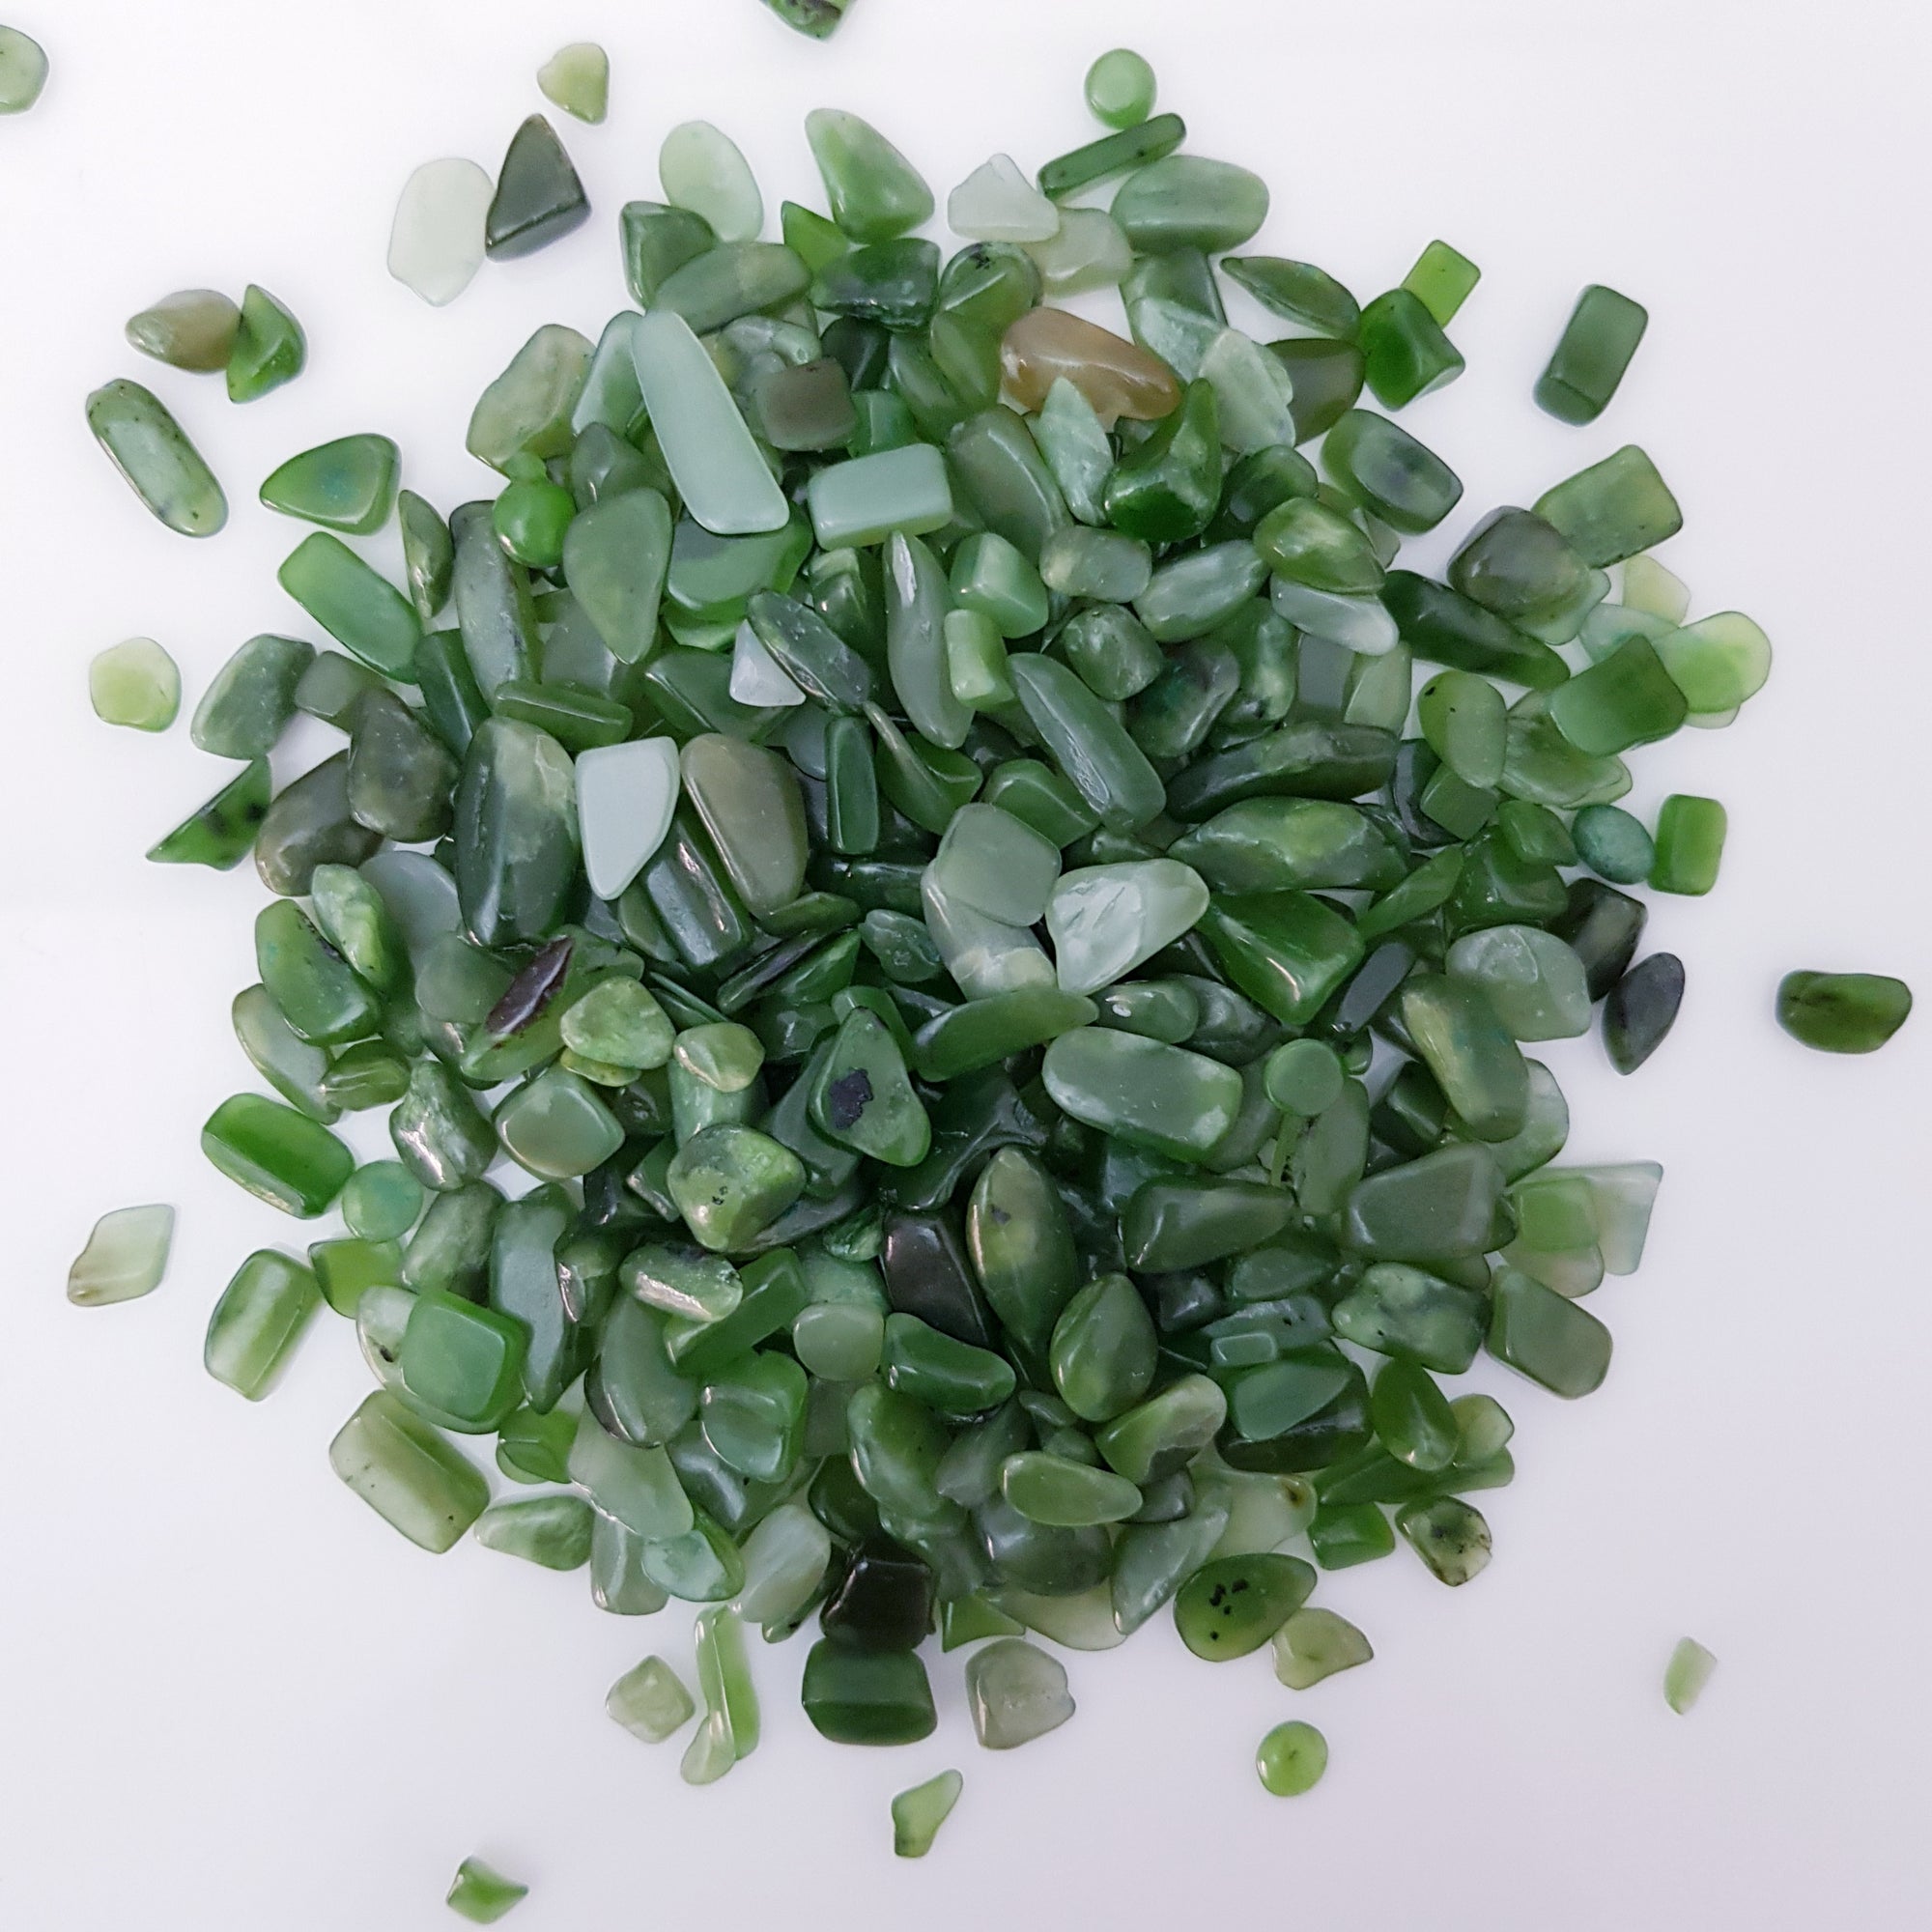 Green jade crystal chips 100g